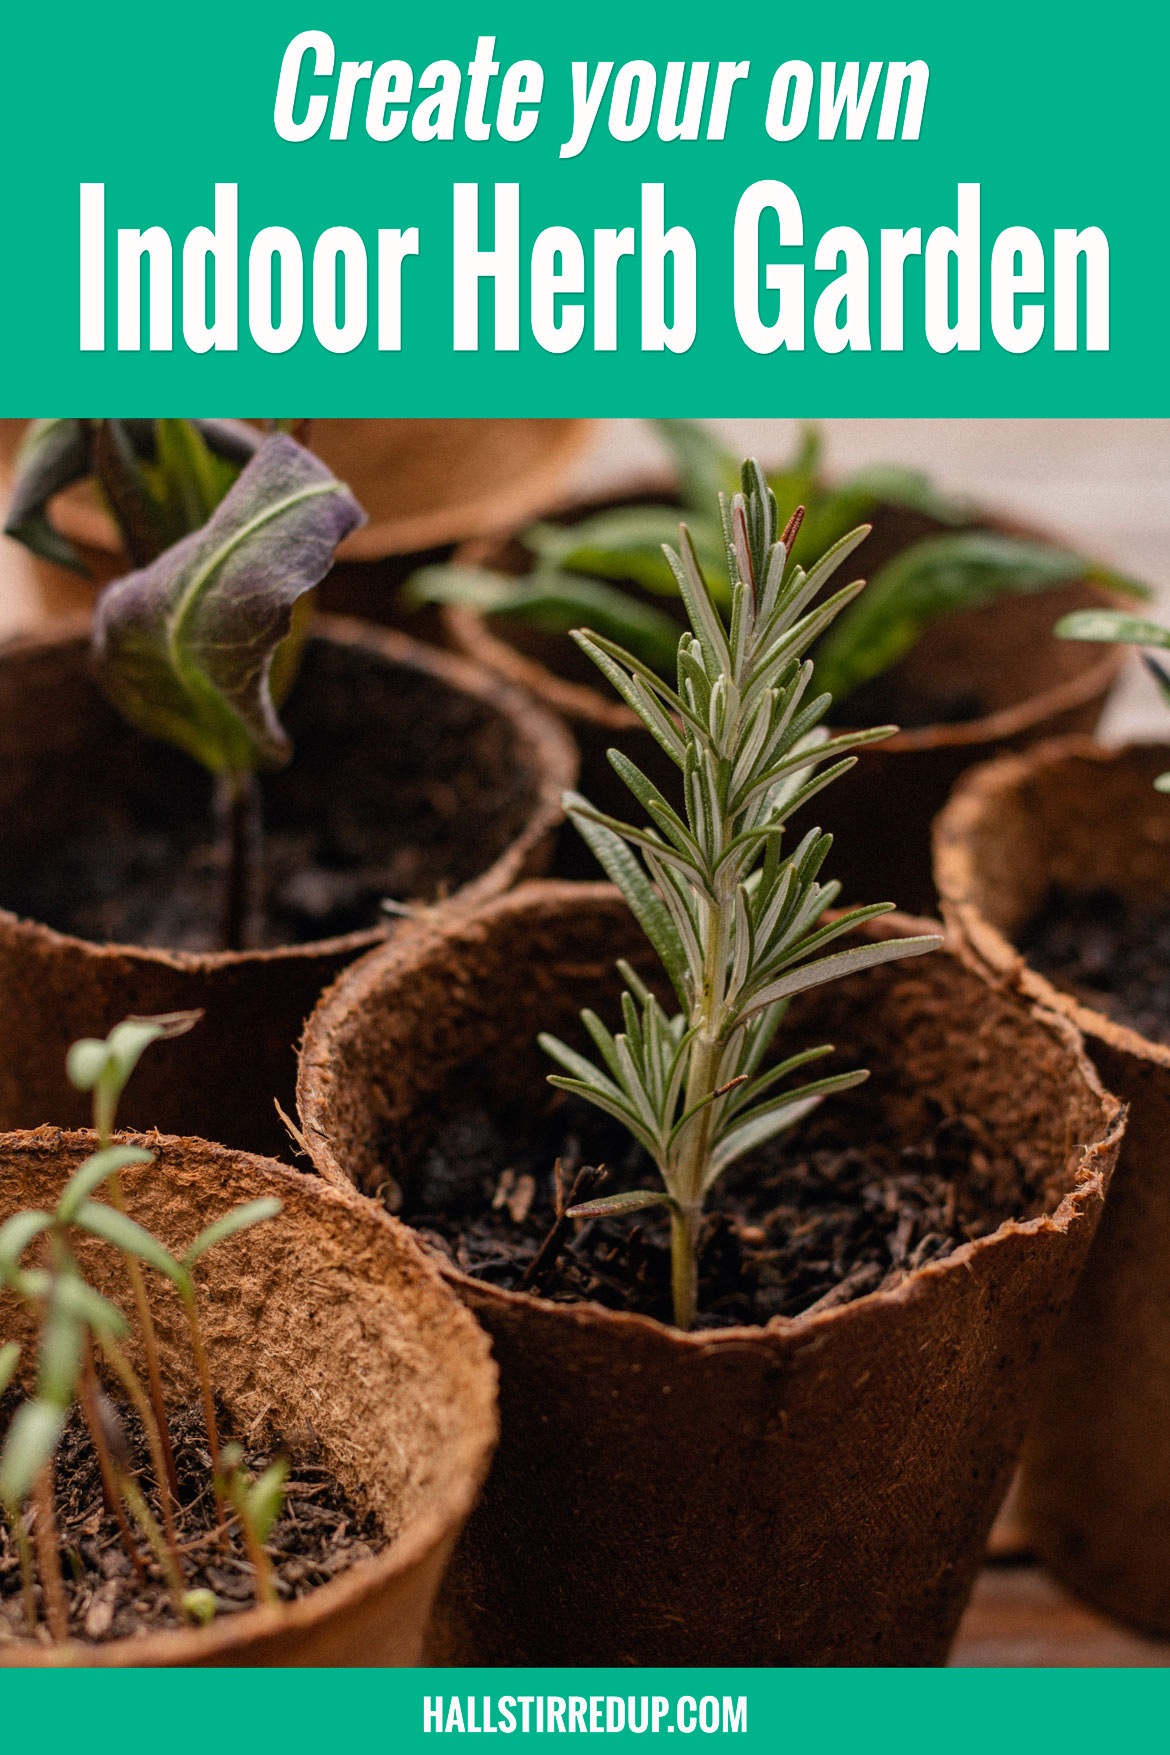 Create your own indoor herb garden